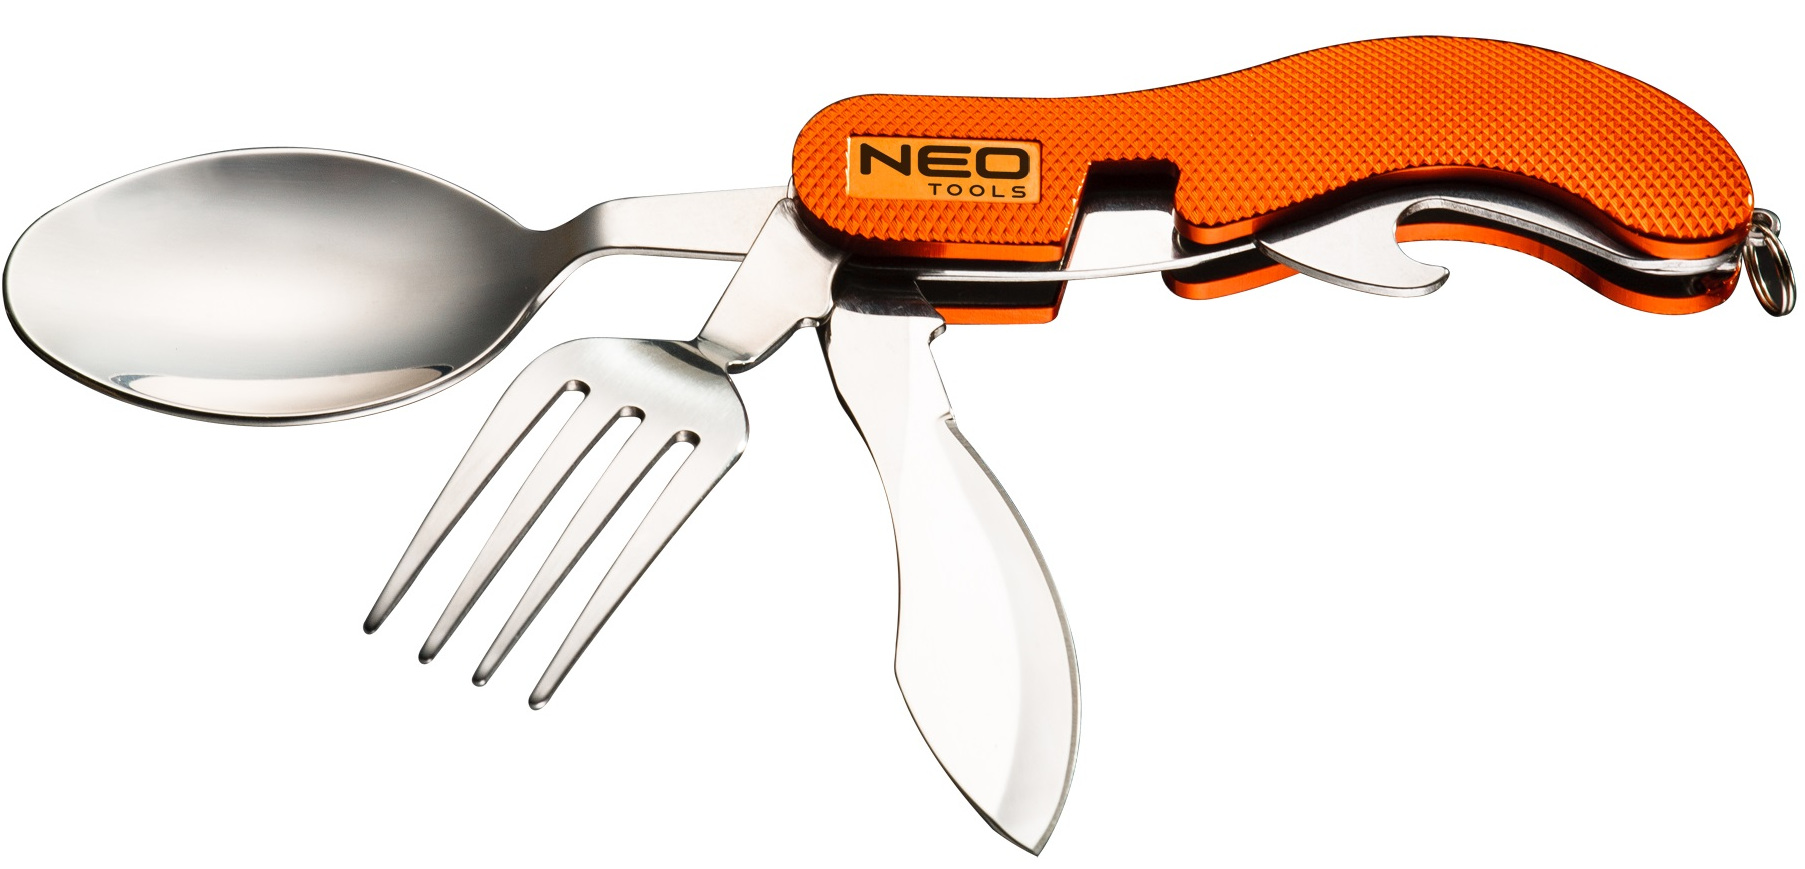 Отзывы нож складной Neo Tools 63-027